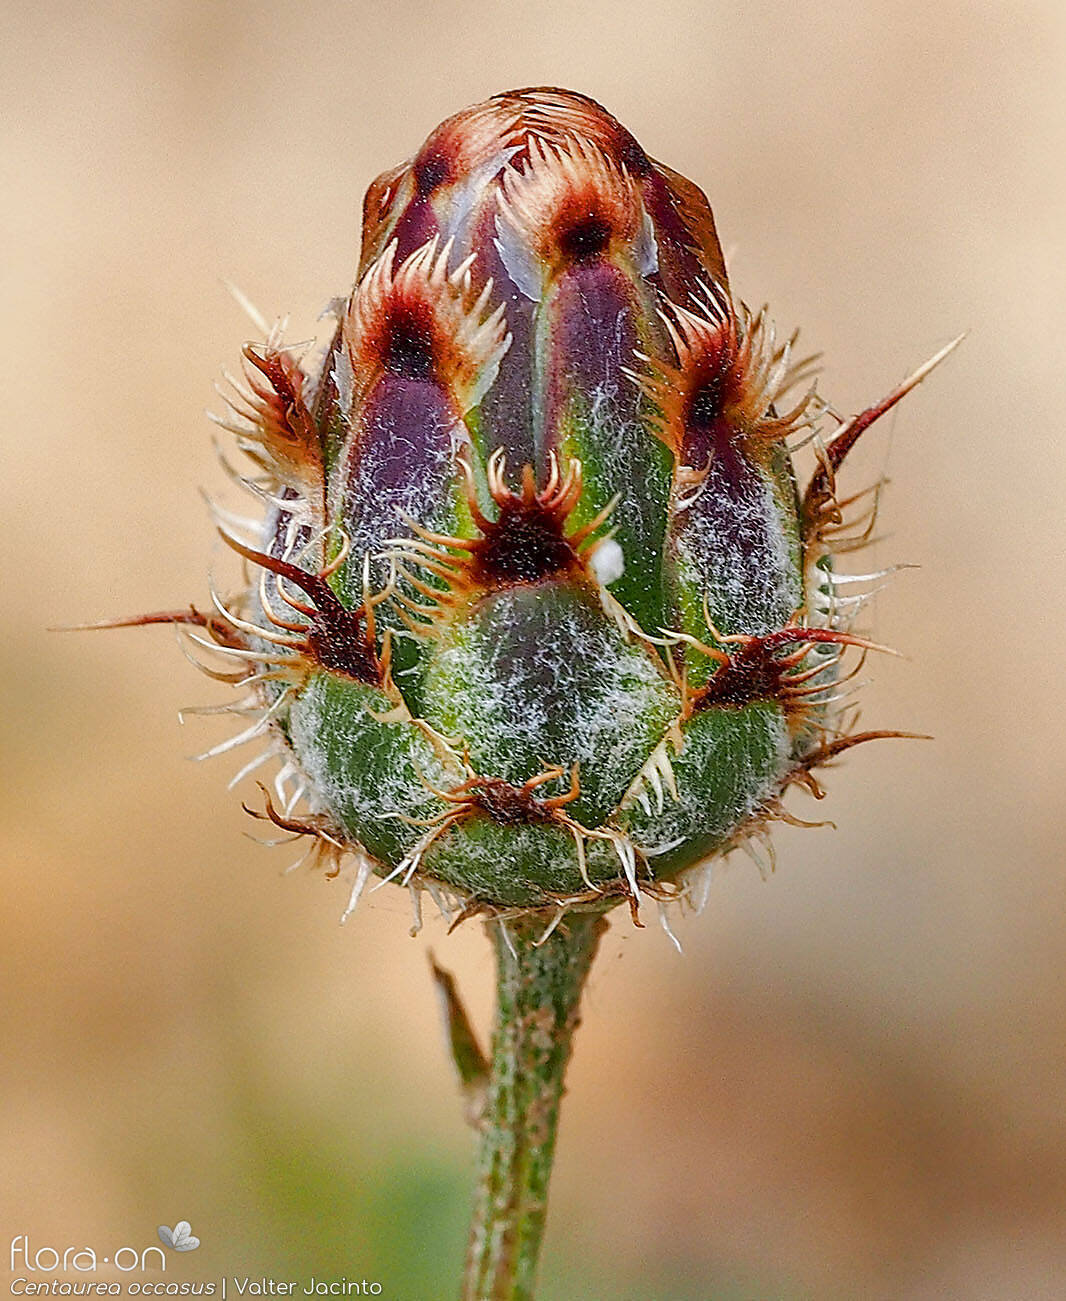 Centaurea occasus - Bráctea | Valter Jacinto; CC BY-NC 4.0